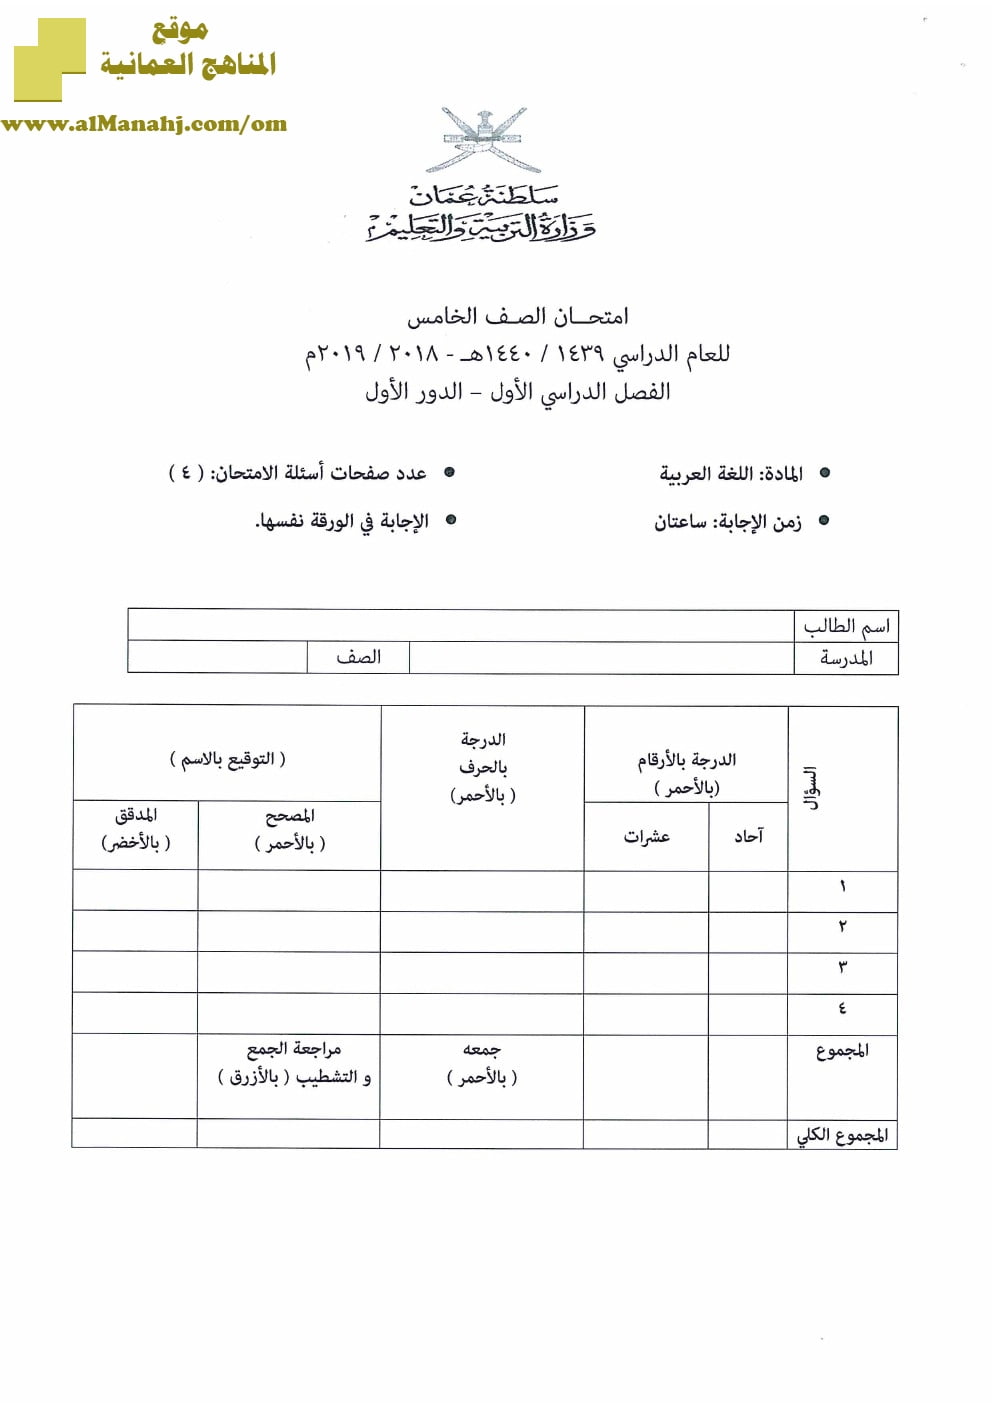 أسئلة وإجابة الامتحان الرسمي للفصل الدراسي الأول الدور الأول والثاني ~ (لغة عربية) الخامس